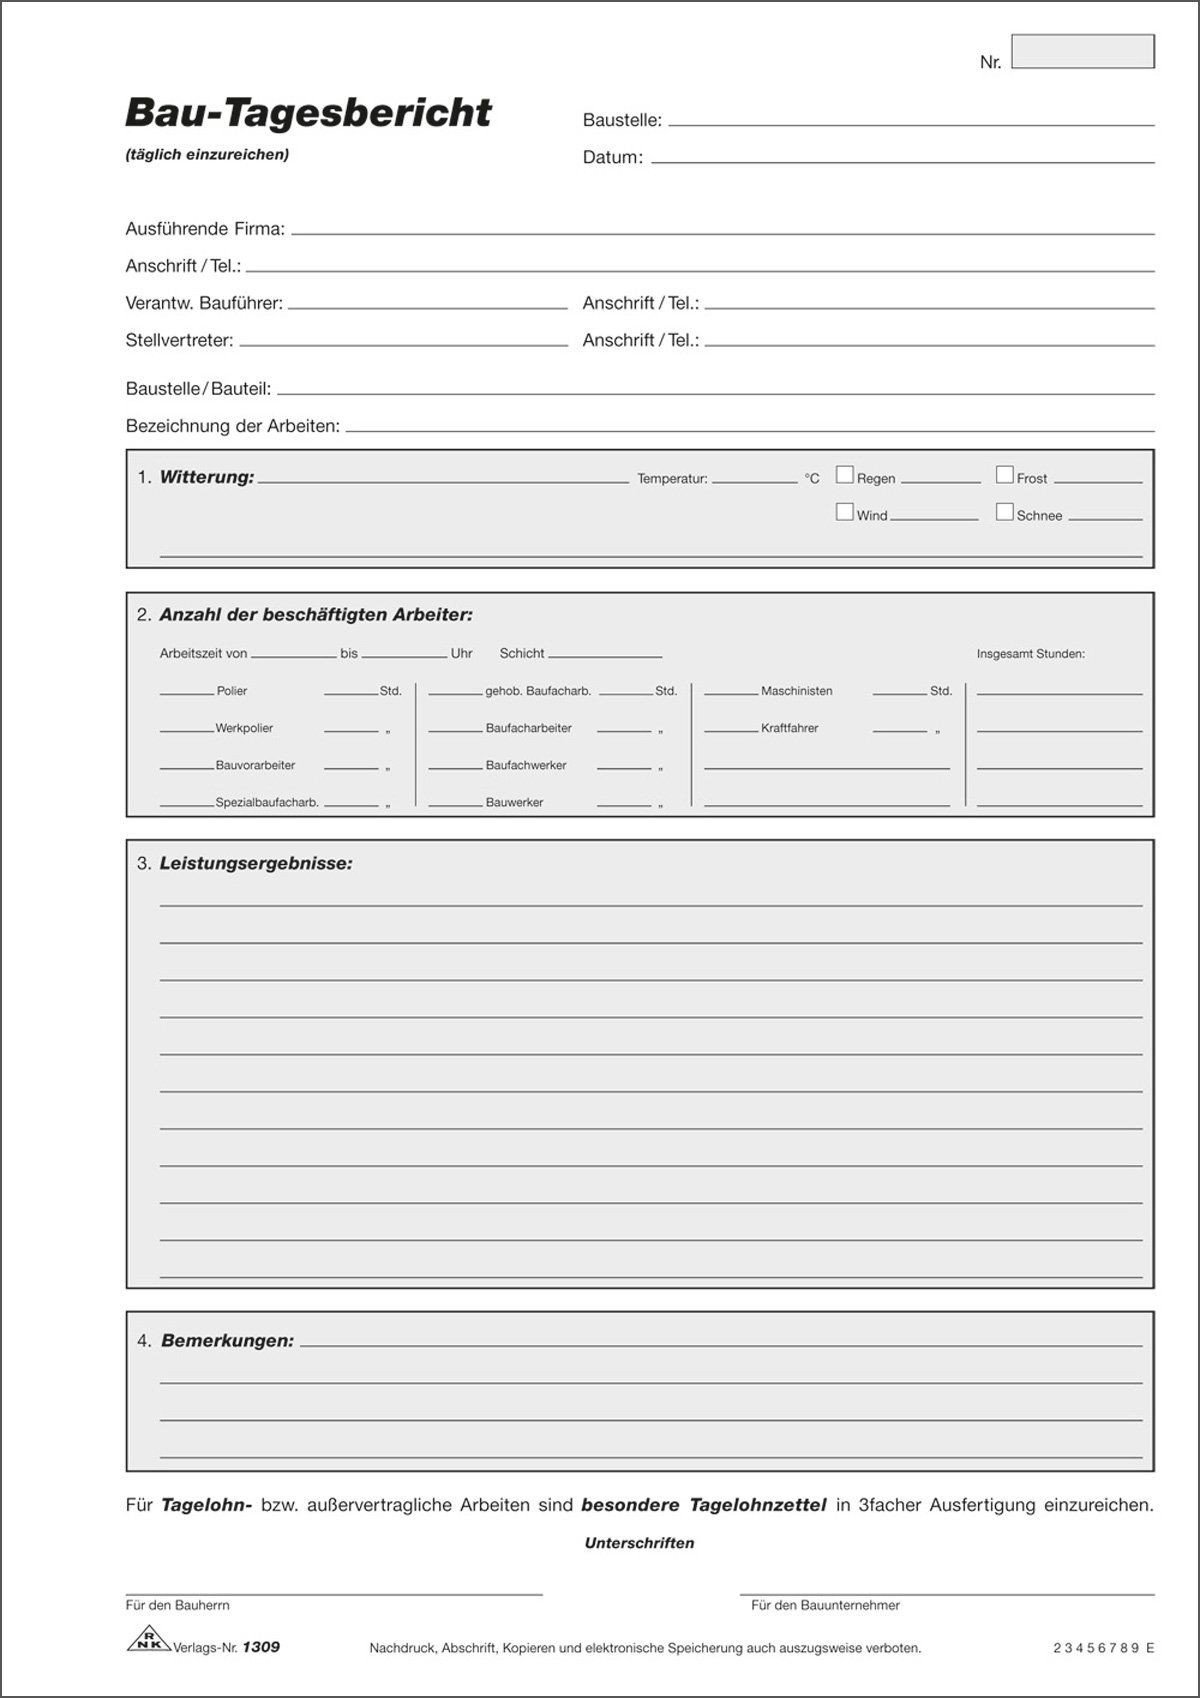 RNKVERLAG 1306 - Bau Tagesbericht, Block mit 3 x 50 Blatt, mit Durchschreibepapier, DIN A4